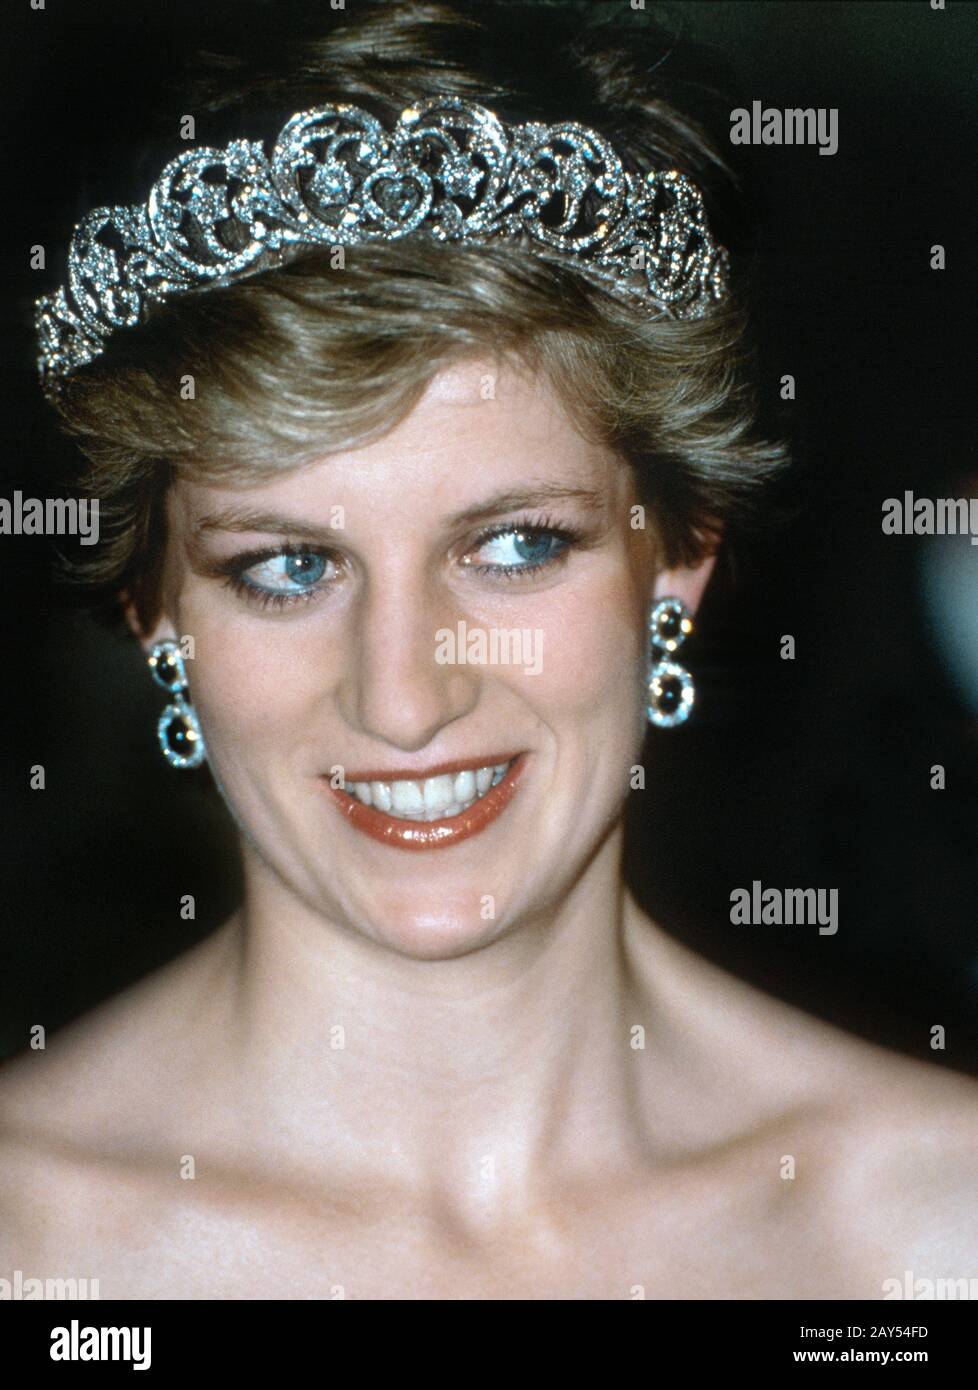 Princess diana tiara hi-res stock photography and images - Alamy